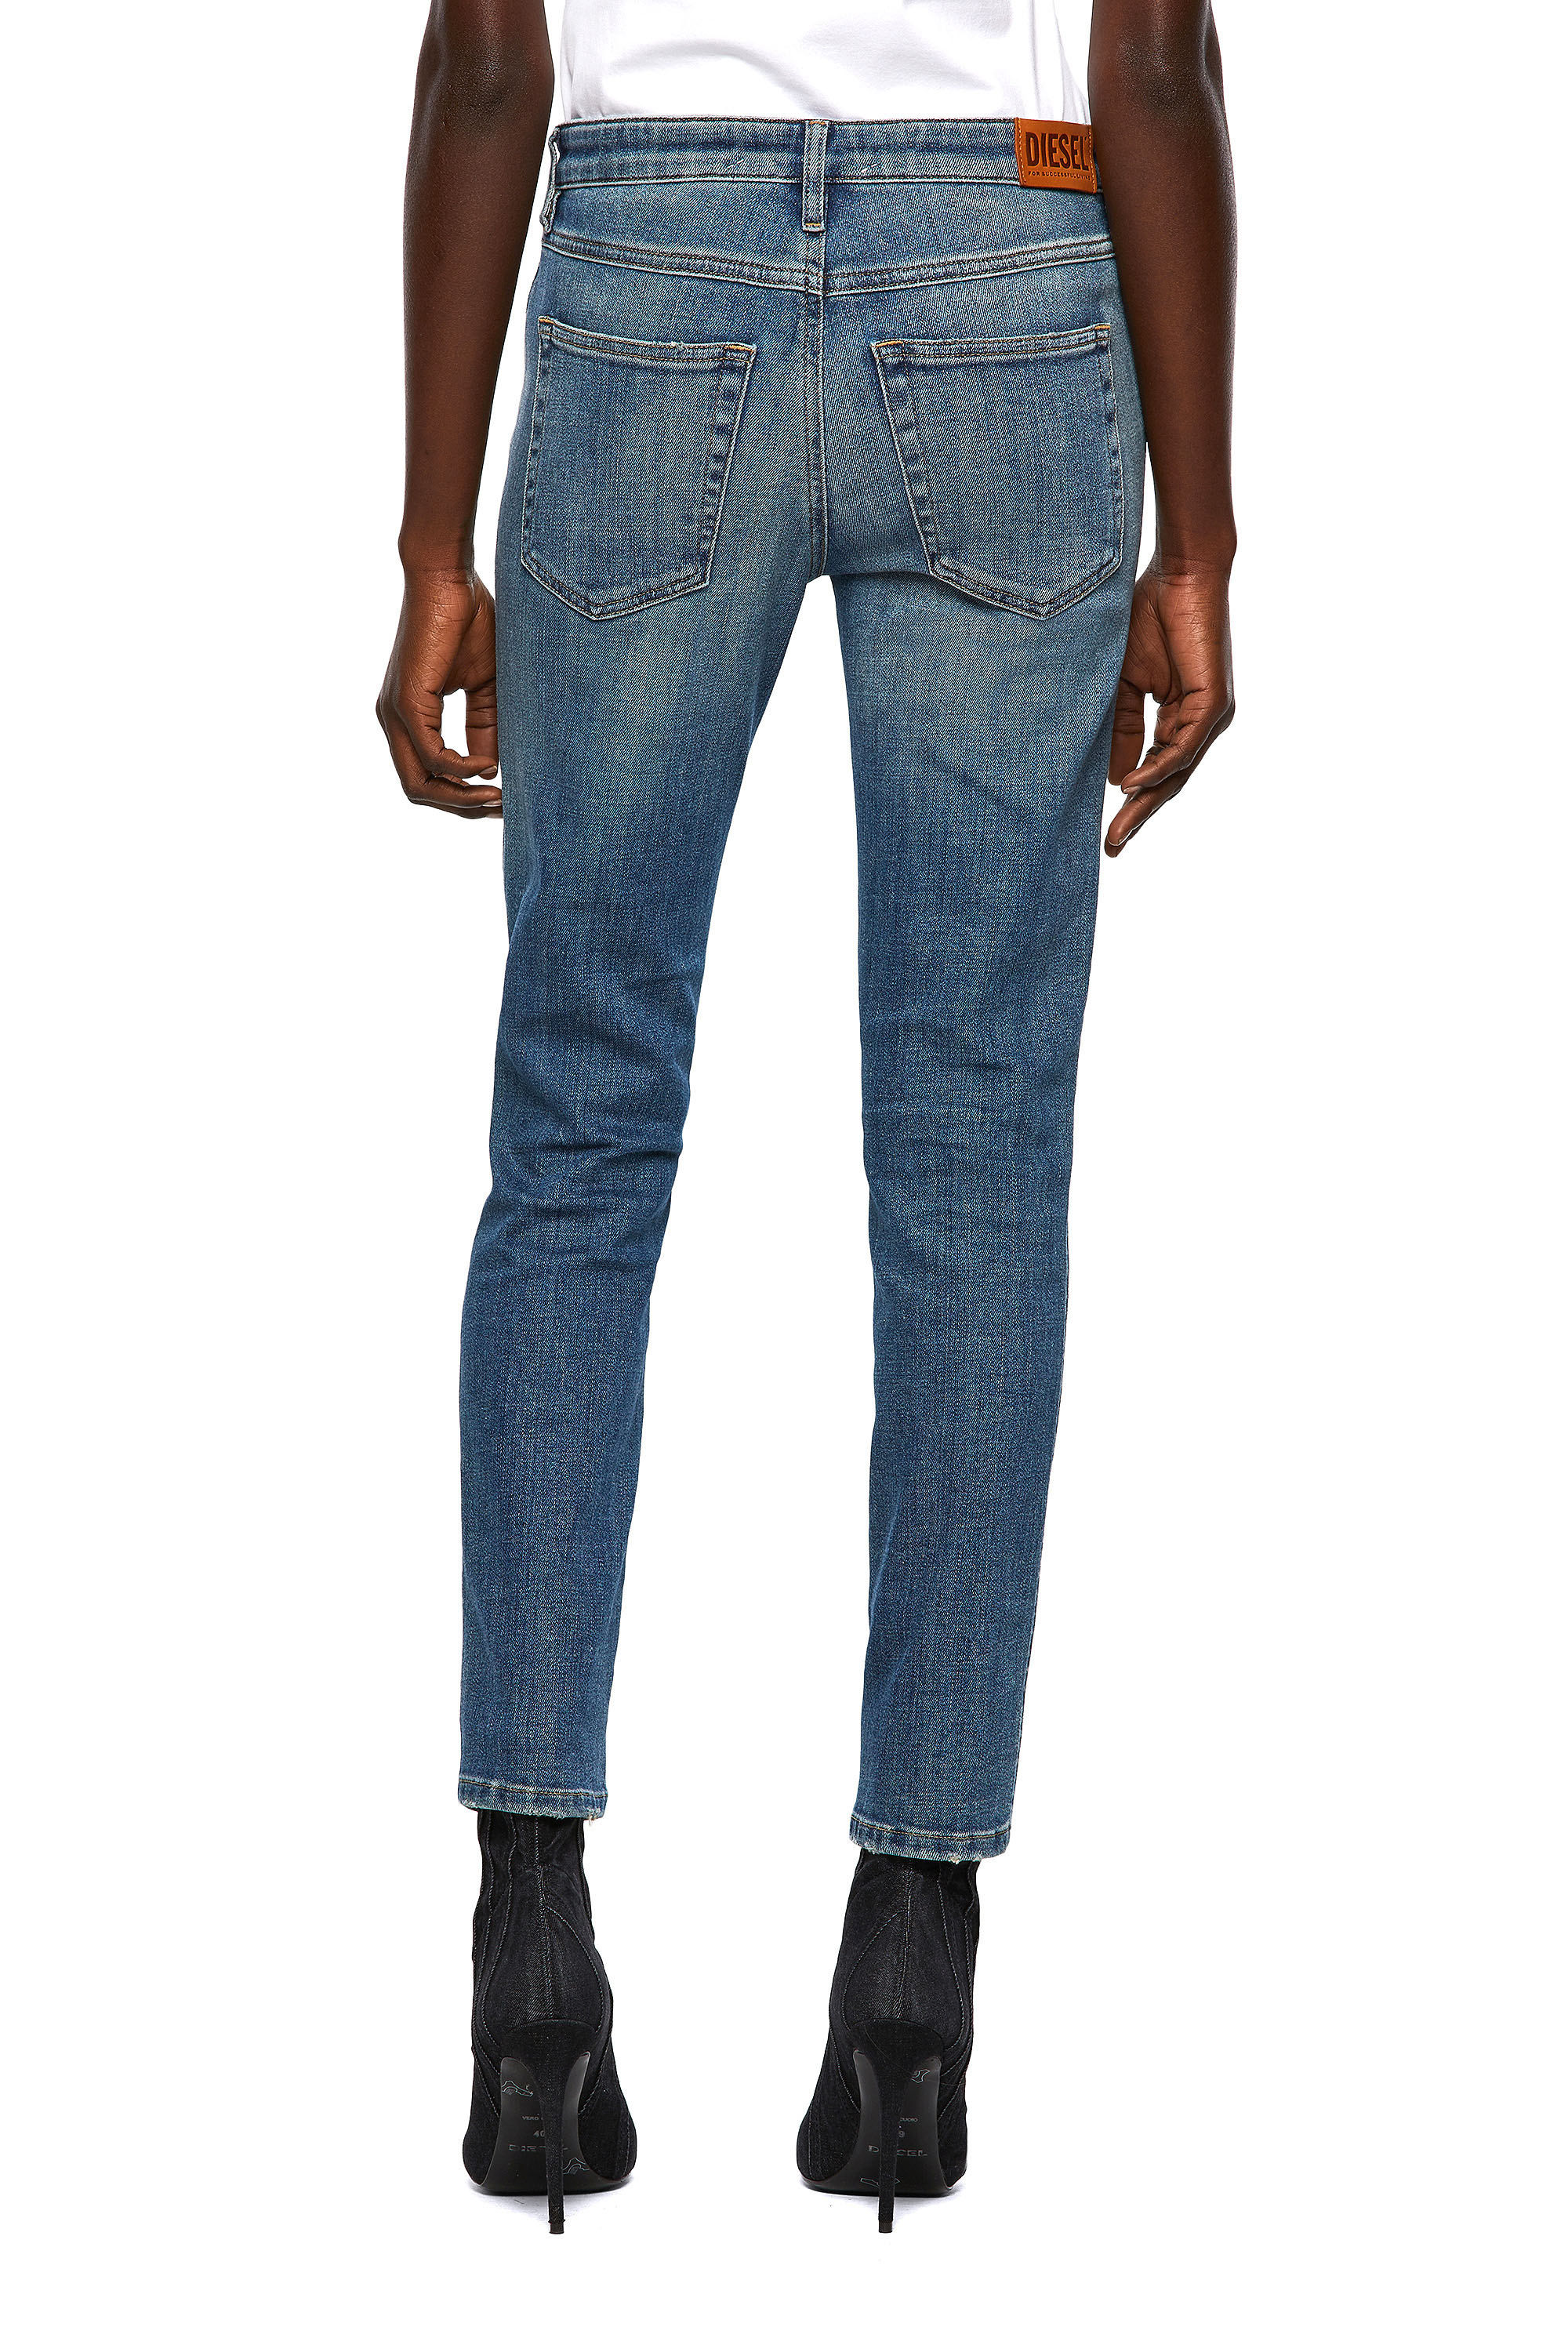 Diesel - Babhila Slim Jeans 09A01,  - Image 2